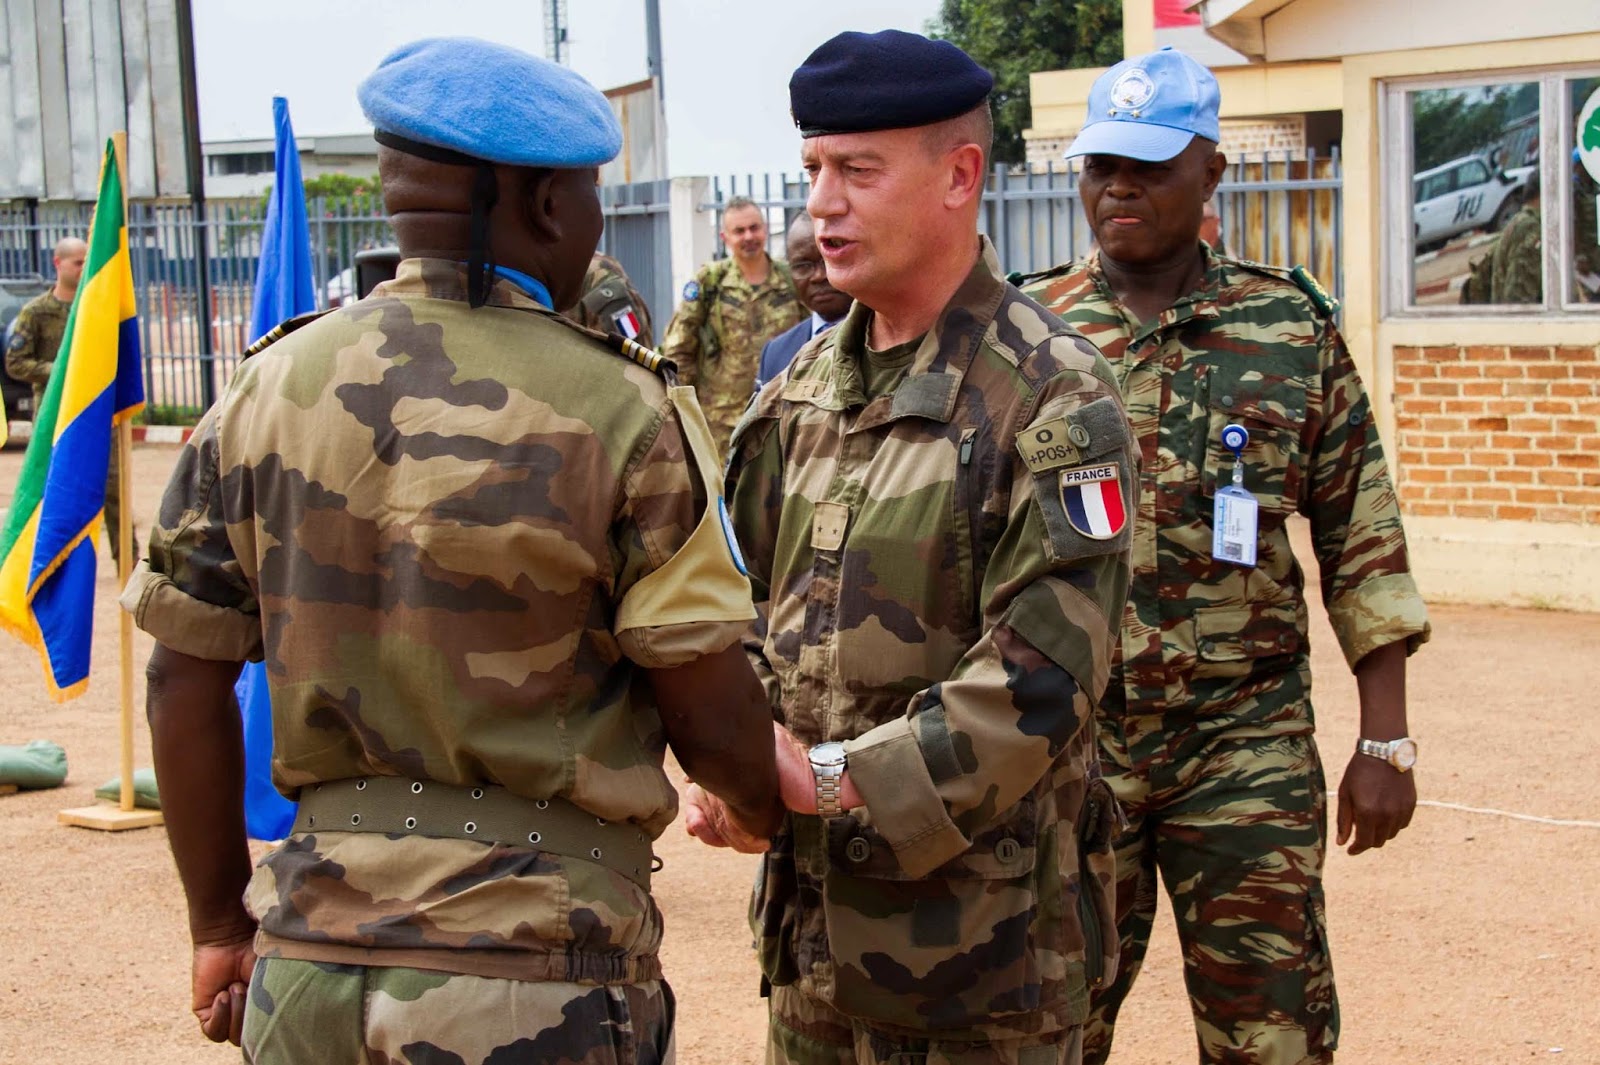 Ευρωπαϊκό Στρατηγείο Λάρισας: «Αποστολή Εξετελέσθη!» Παραδόθηκε εν χρόνω η ασφάλεια του διεθνούς αεροδρομίου του Bangui στις δυνάμεις των Ηνωμένων Εθνών MINUSCA - Φωτογραφία 7